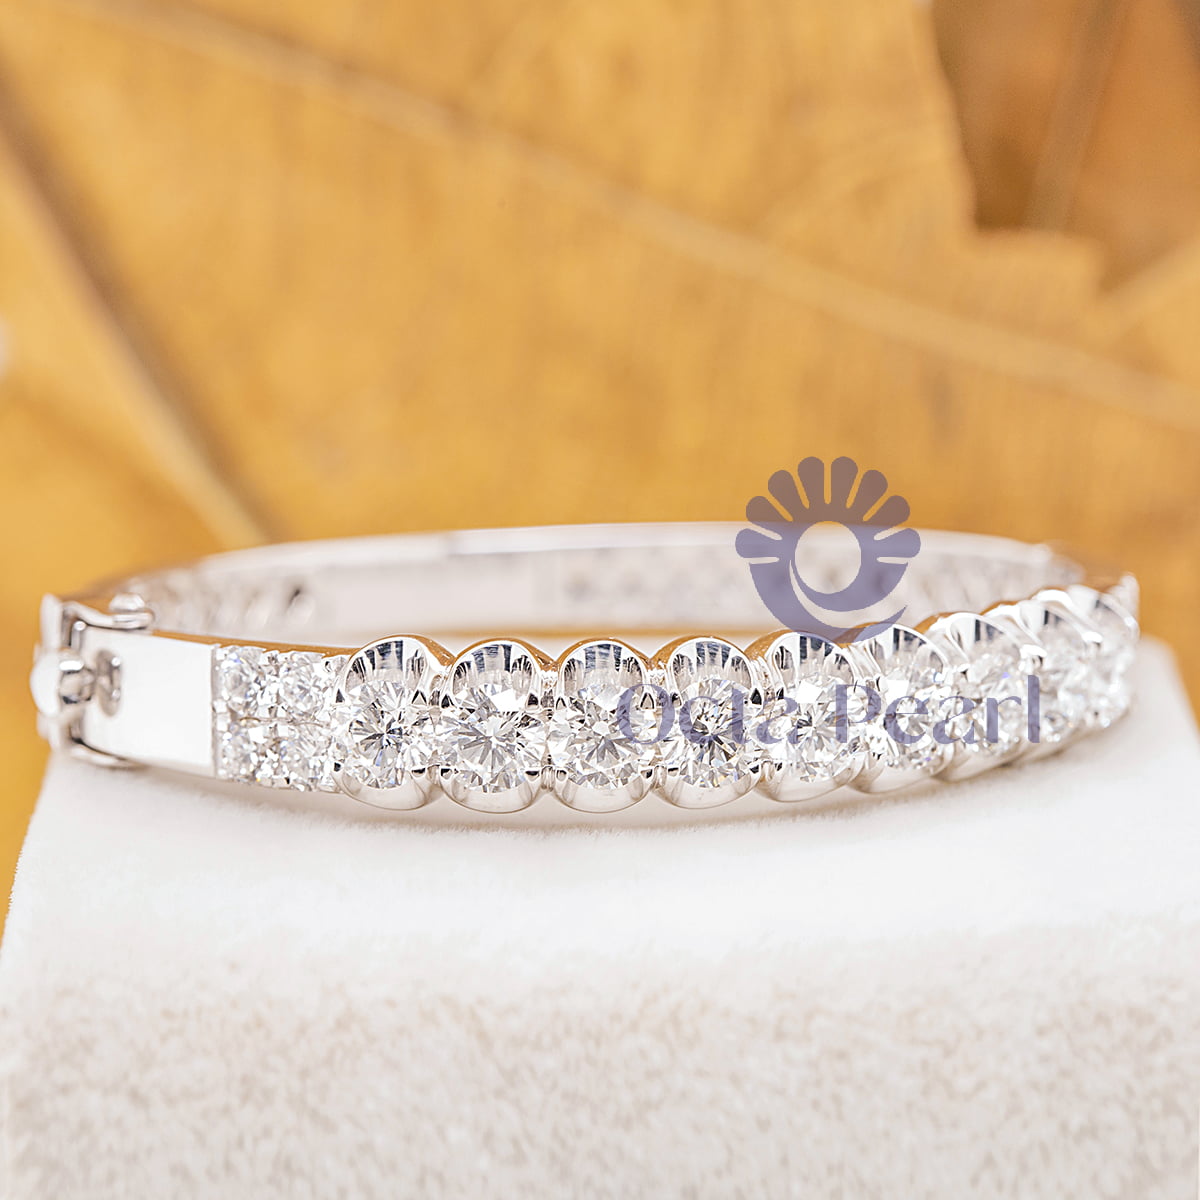 Women Or Men's Round Cut Moissanite Bangle Bracelet For Wedding Gift